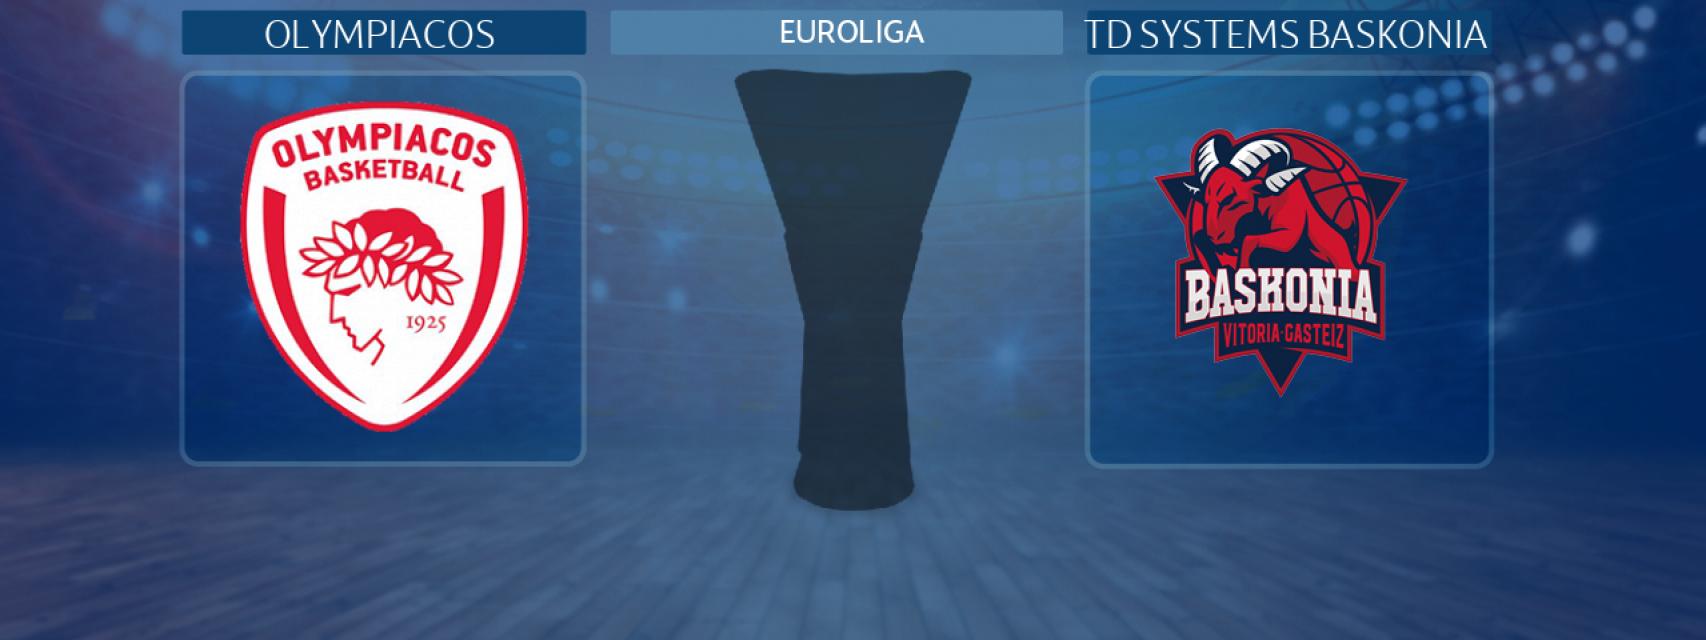 Olympiacos - TD Systems Baskonia, partido de la Euroliga